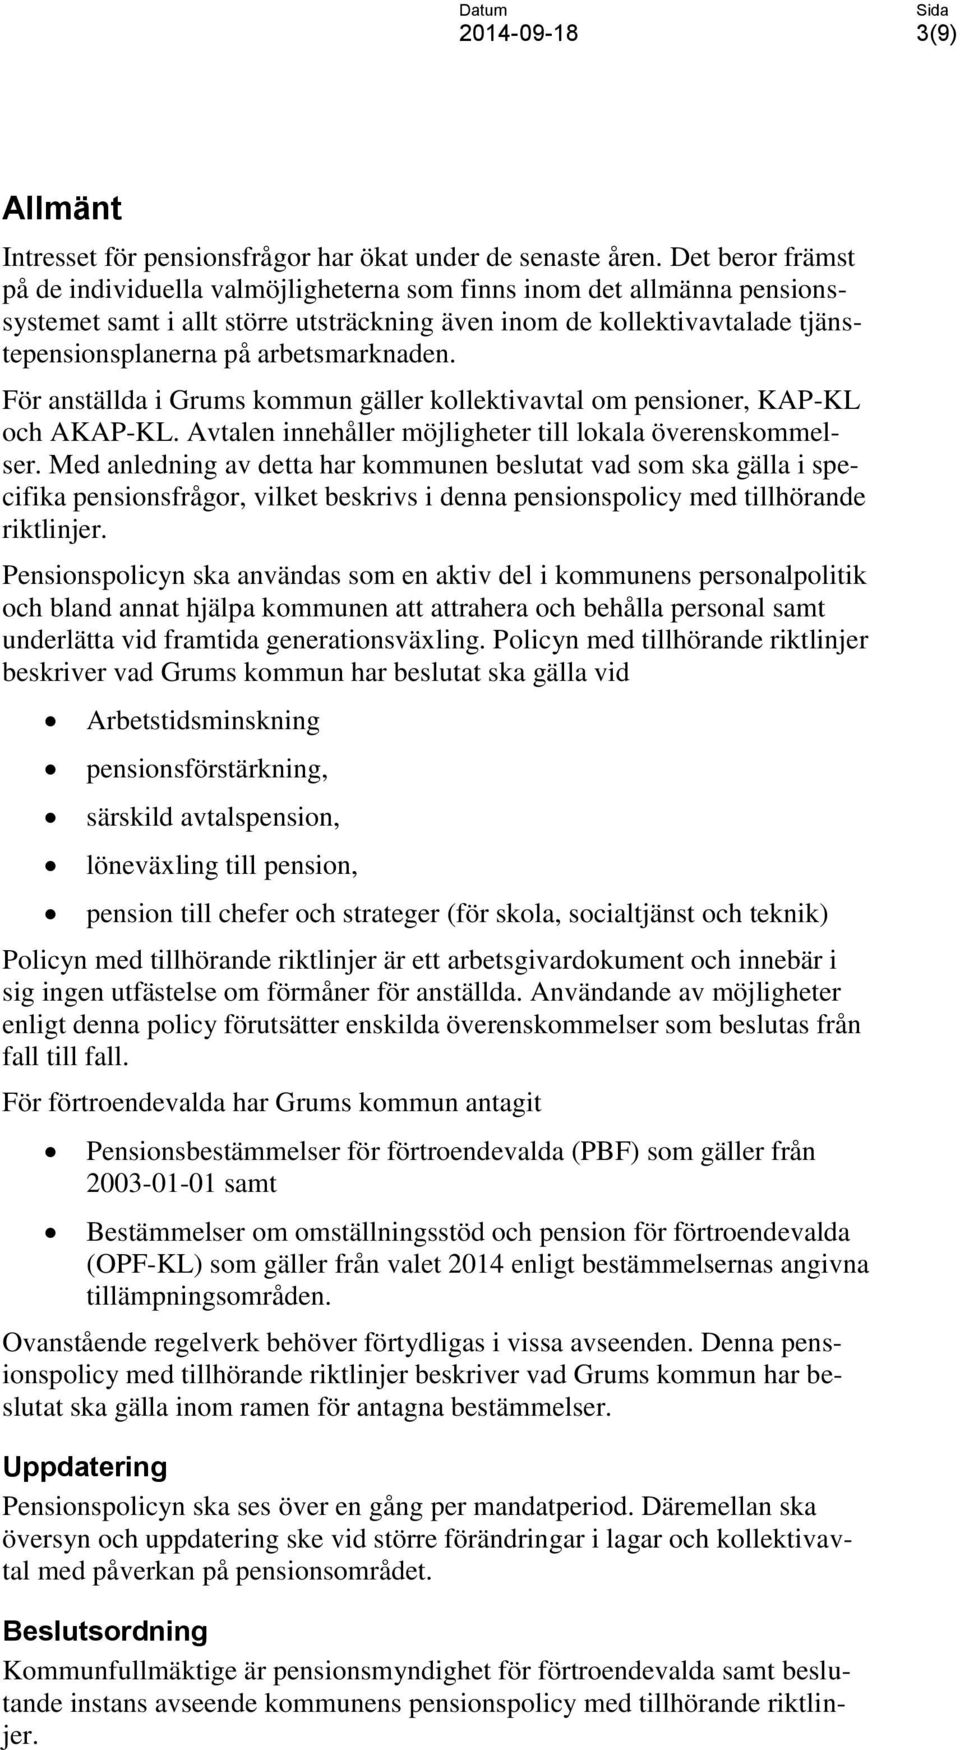 arbetsmarknaden. För anställda i Grums kommun gäller kollektivavtal om pensioner, KAP-KL och AKAP-KL. Avtalen innehåller möjligheter till lokala överenskommelser.